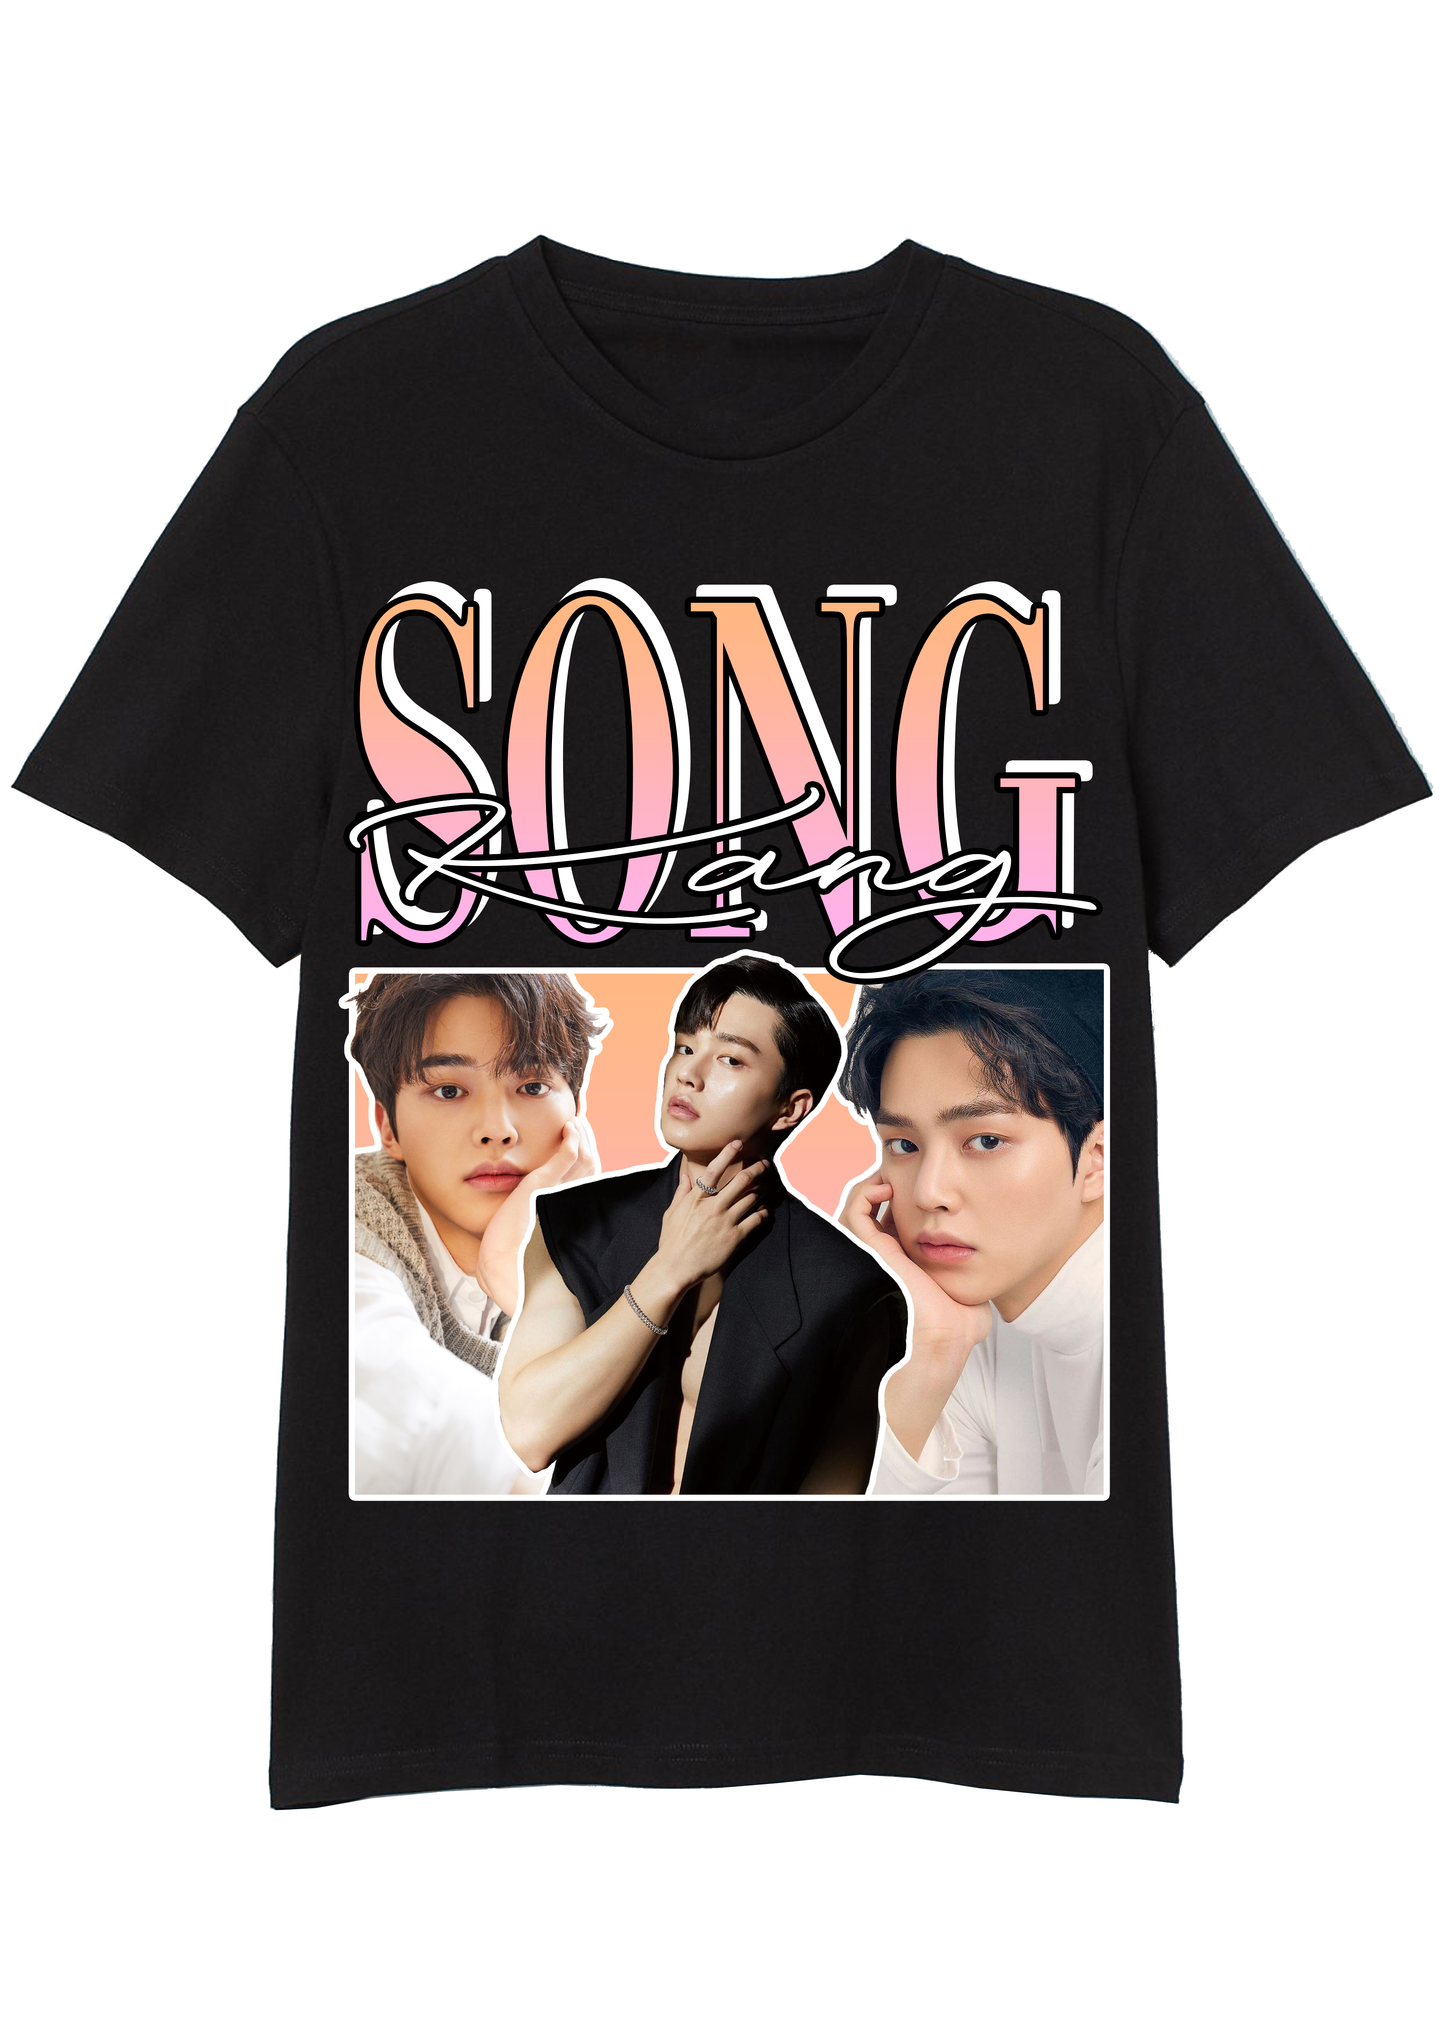 Song Kang Vintage T-Shirt